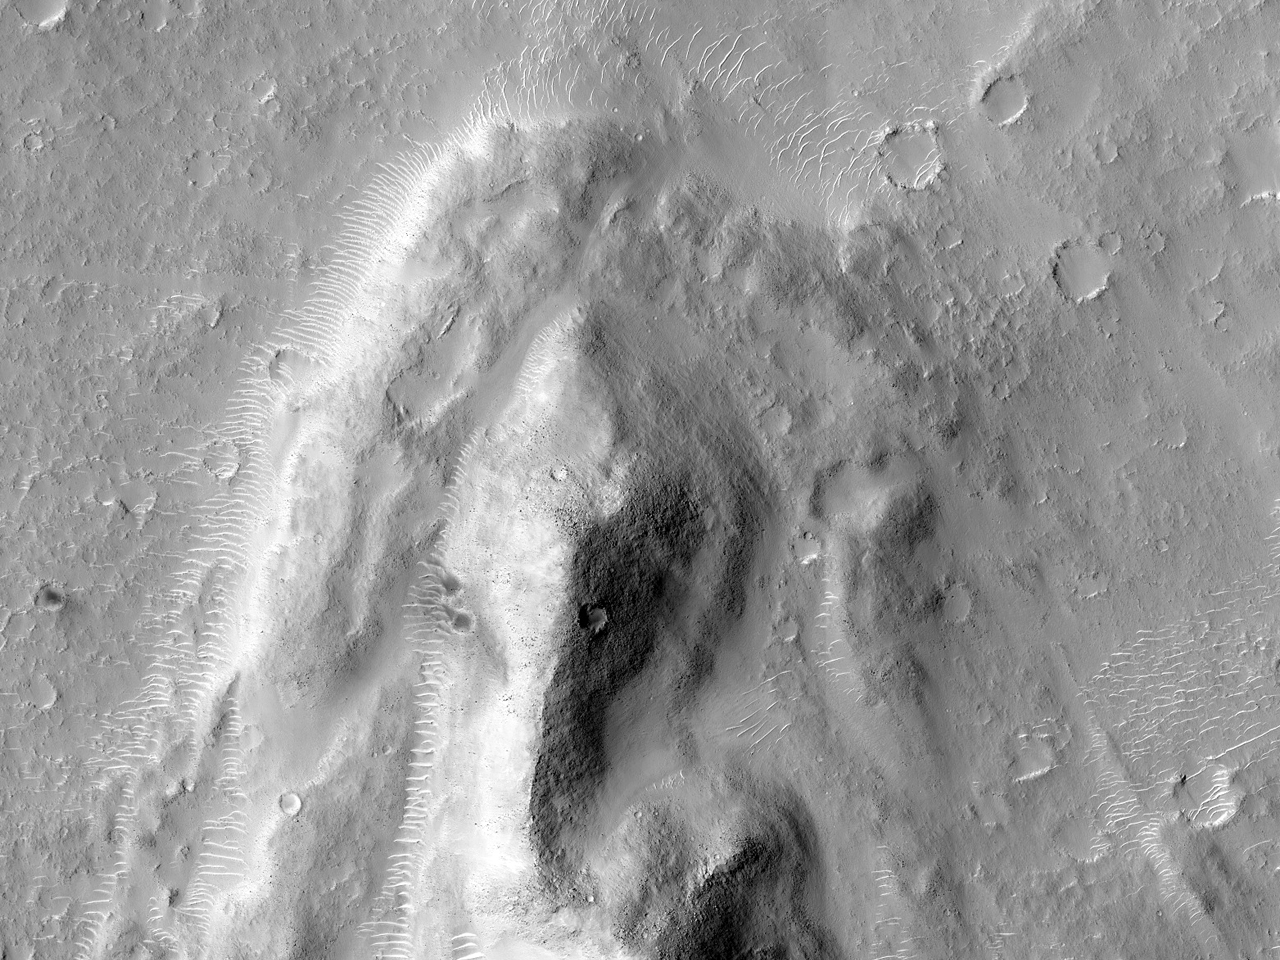 Prawdopodobna pradawna linia brzegowa na południu równiny Isidis Planitia